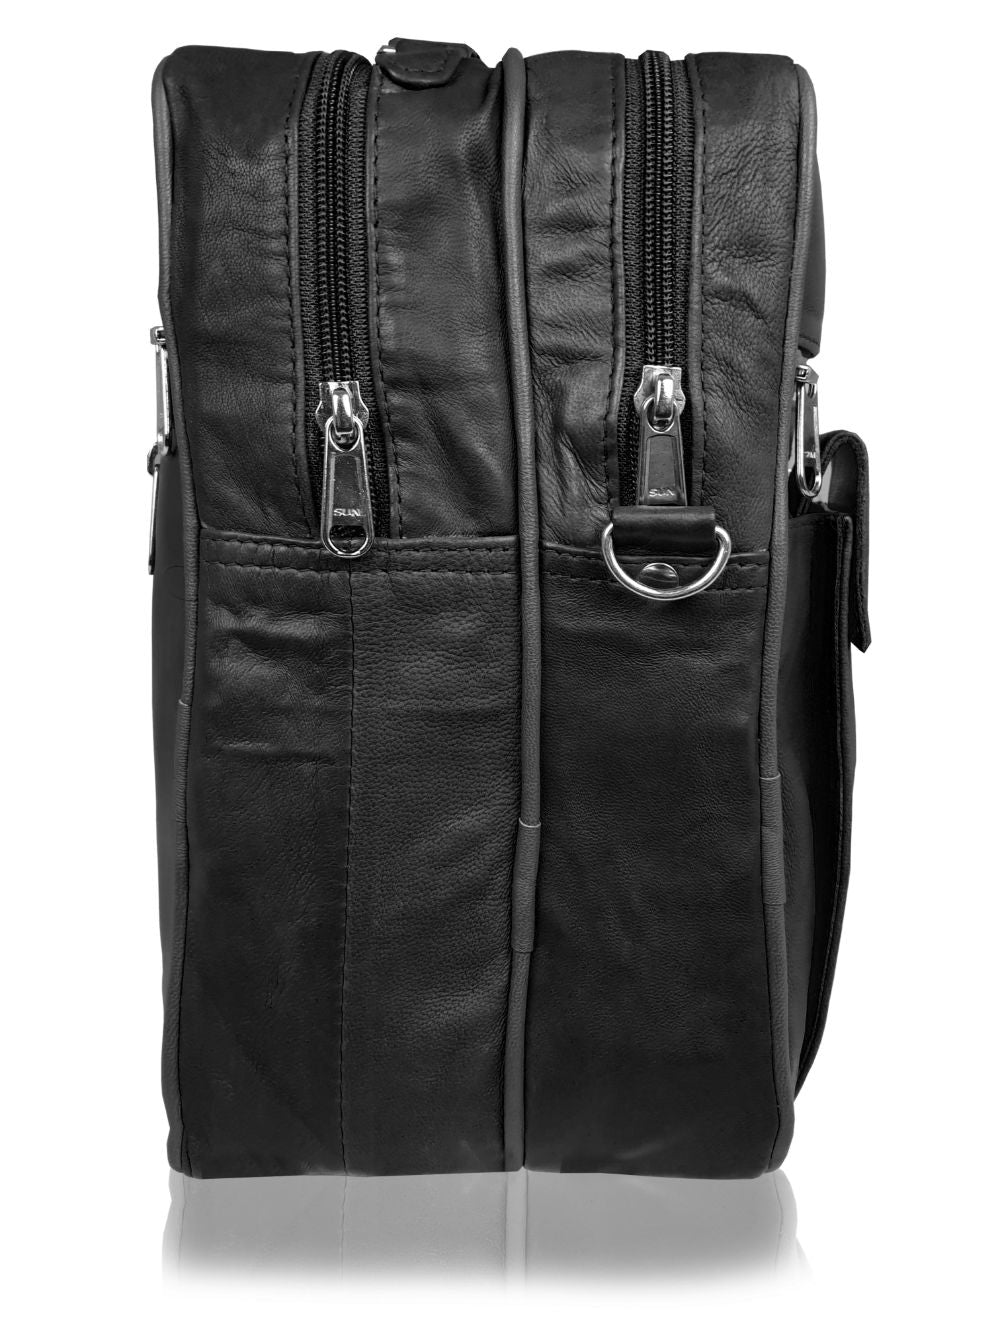 Roamlite Mens Travel Bag Black Leather RL504 side